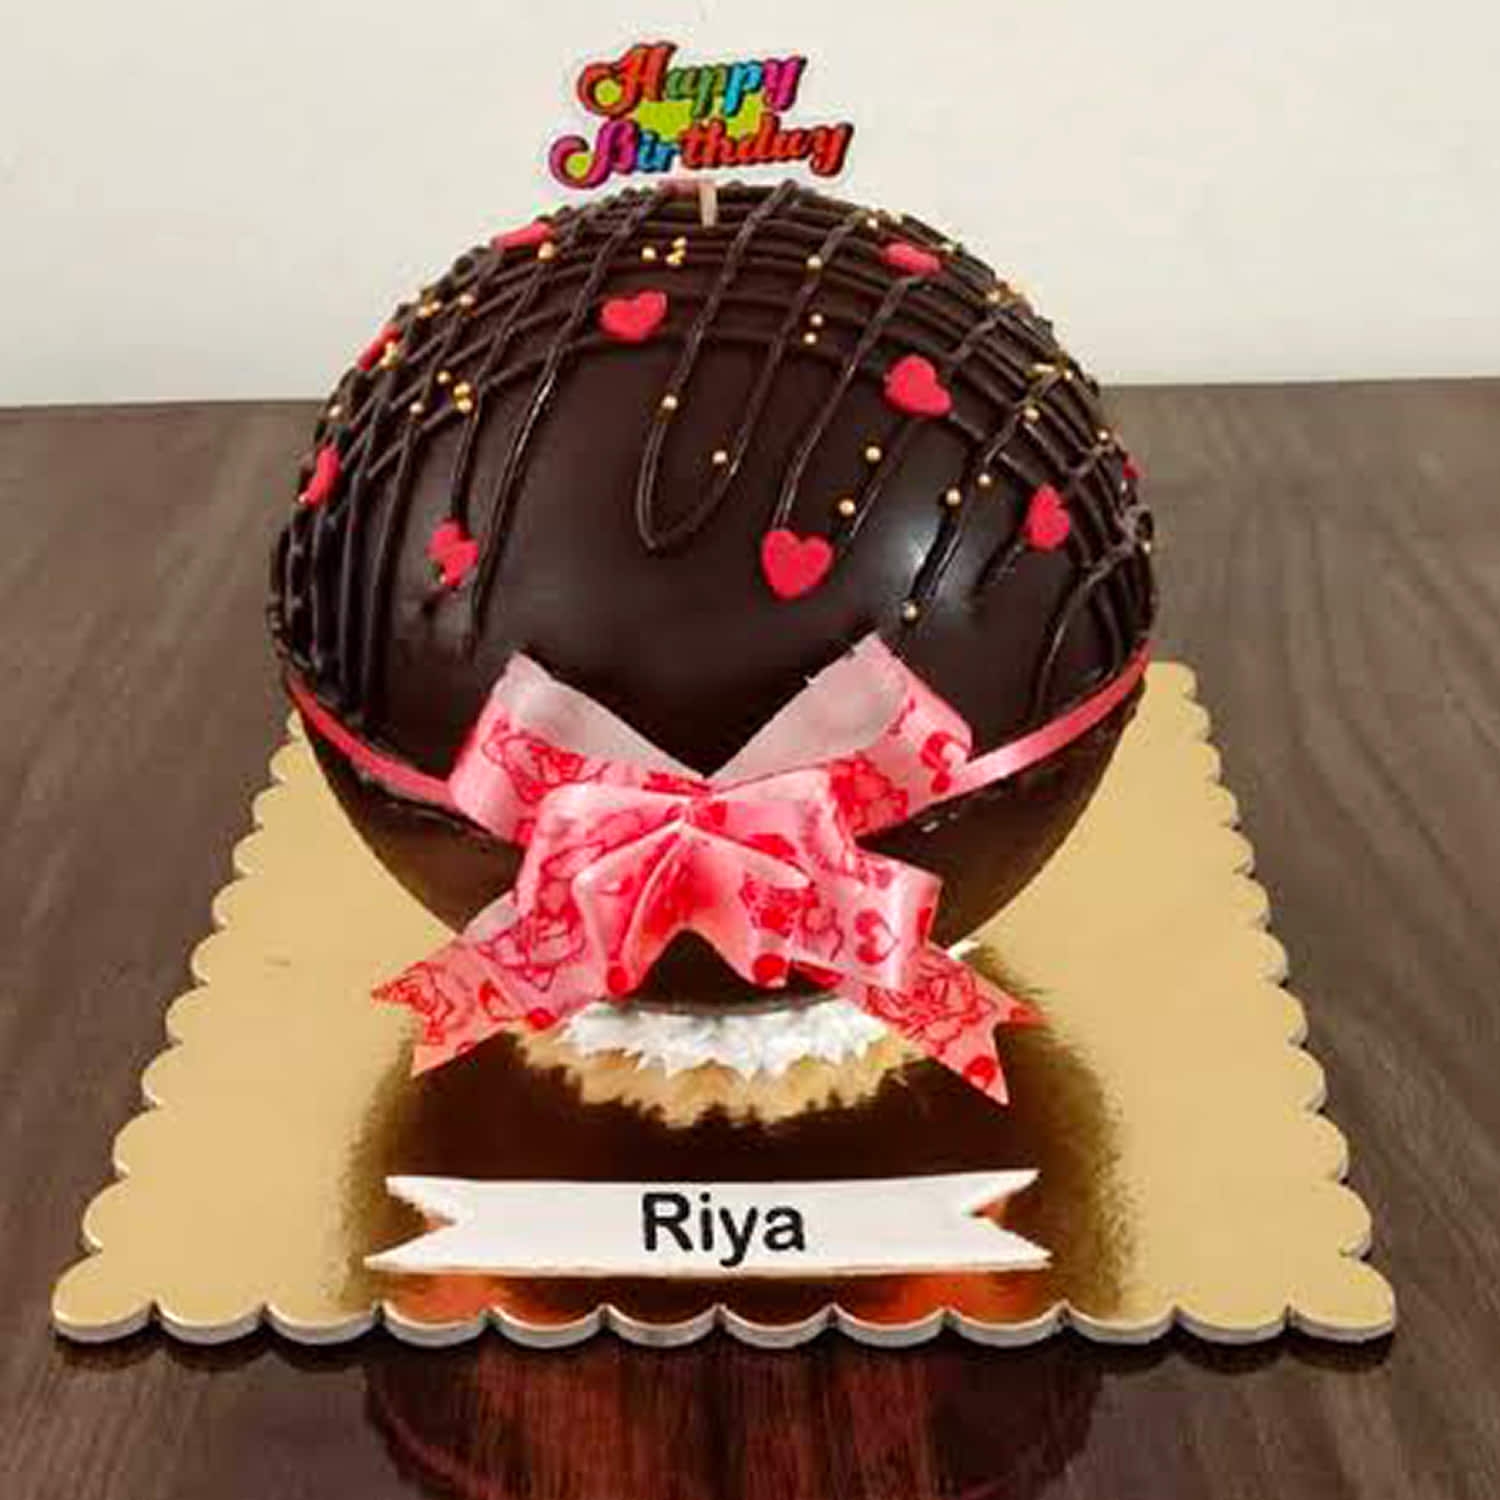 5 Best Cake shops in Indore, MP - 5BestINcity.com